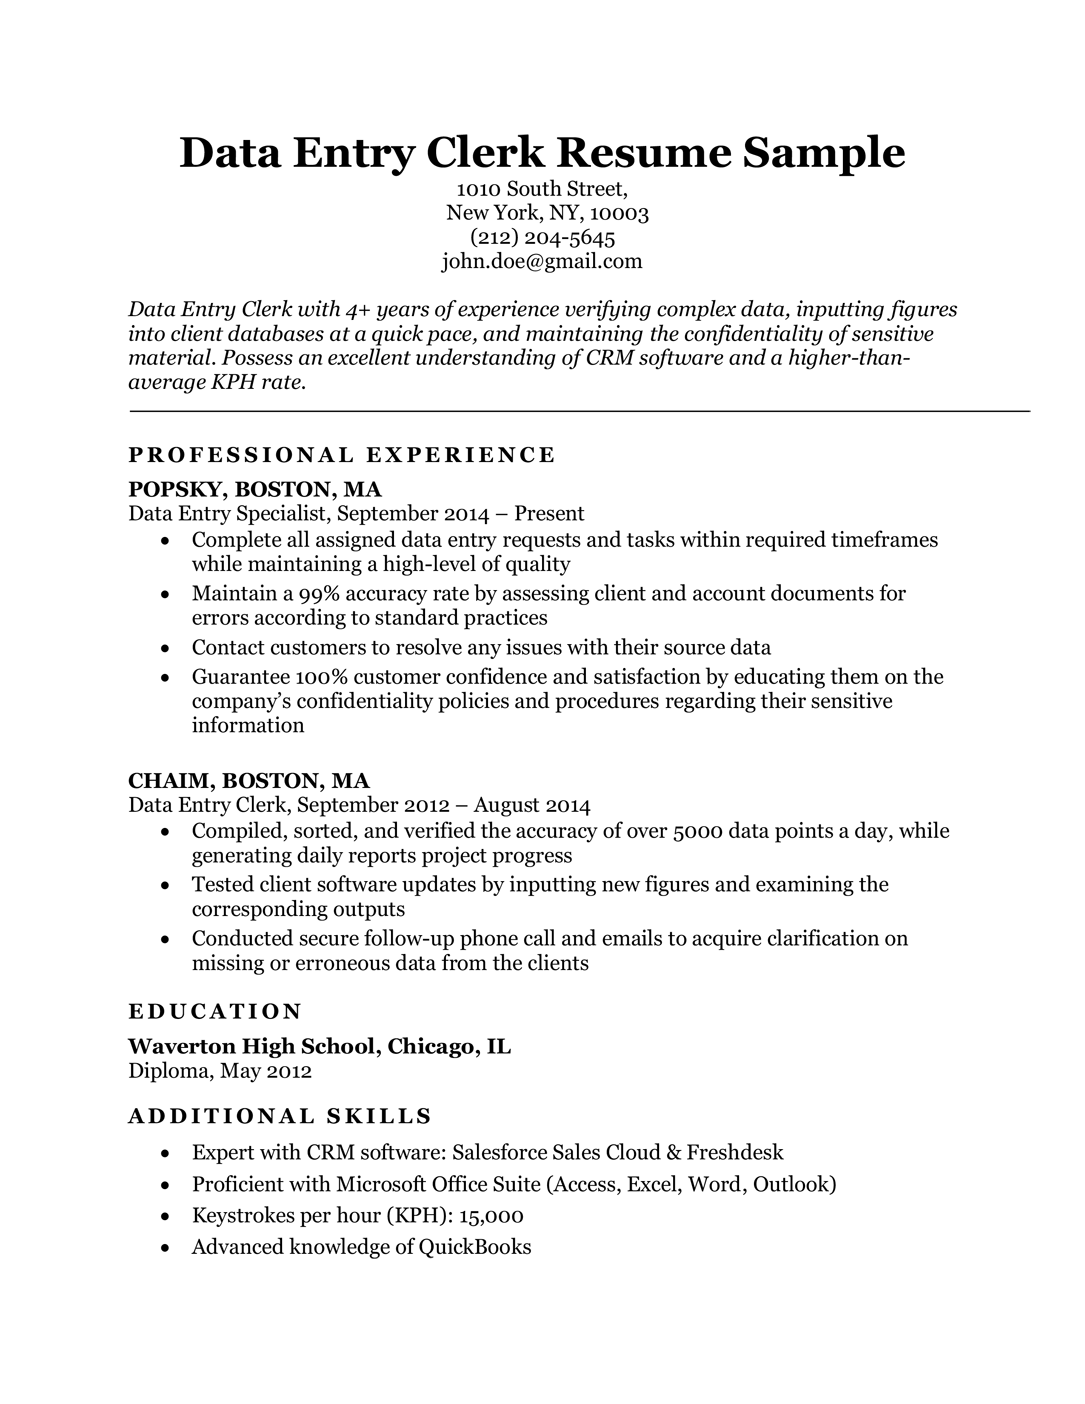 Data entry job description